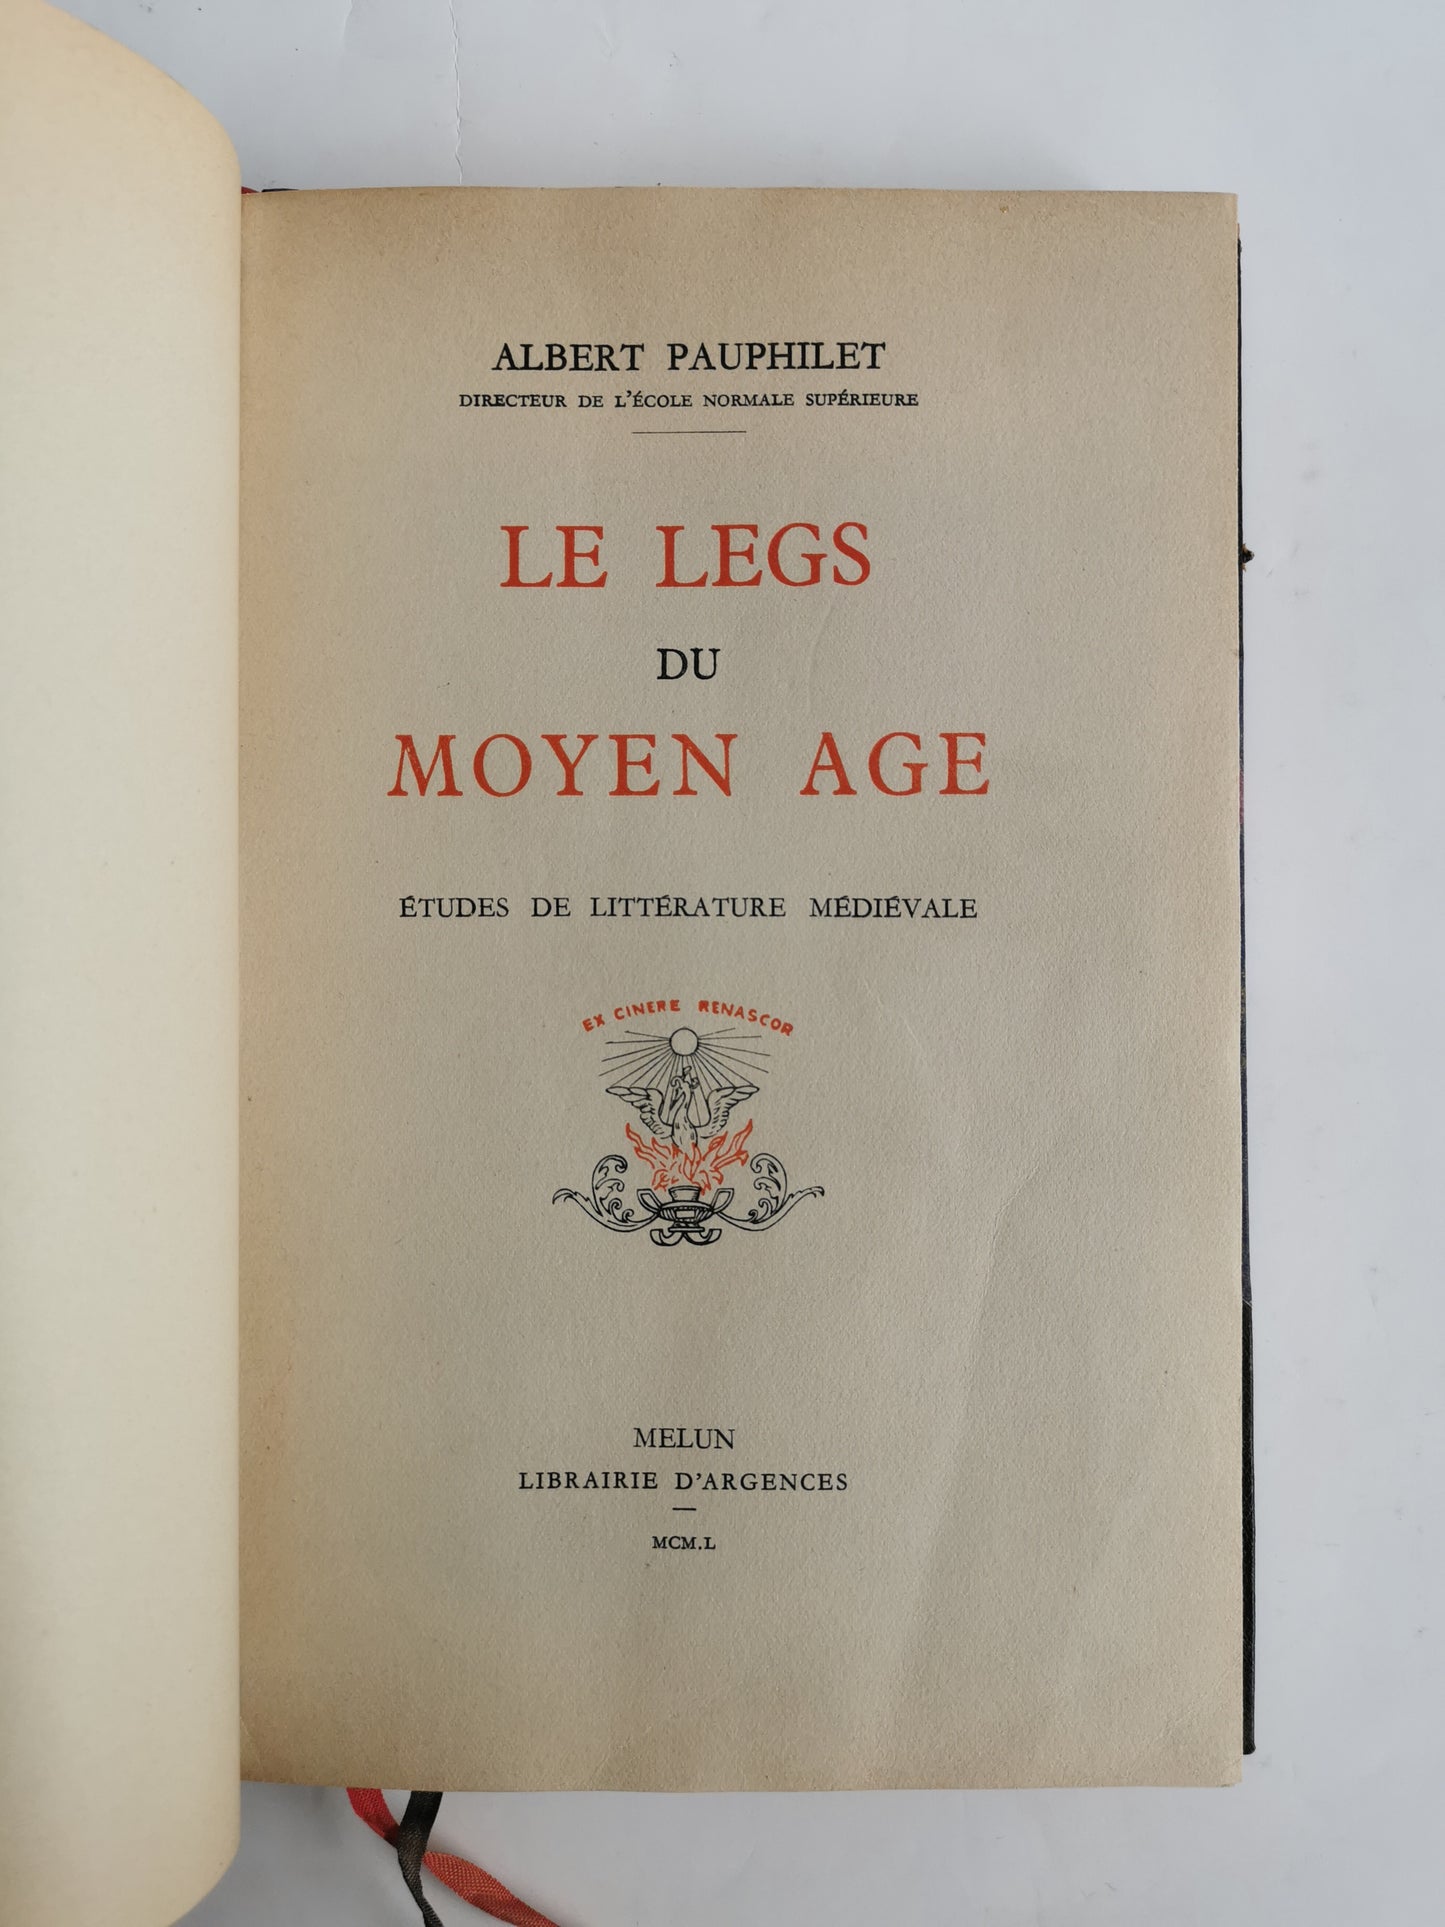 Le legs du Moyen-Age, études de littérature médiévale, Albert Pauphilet, Librairie d'Argences, 1949.